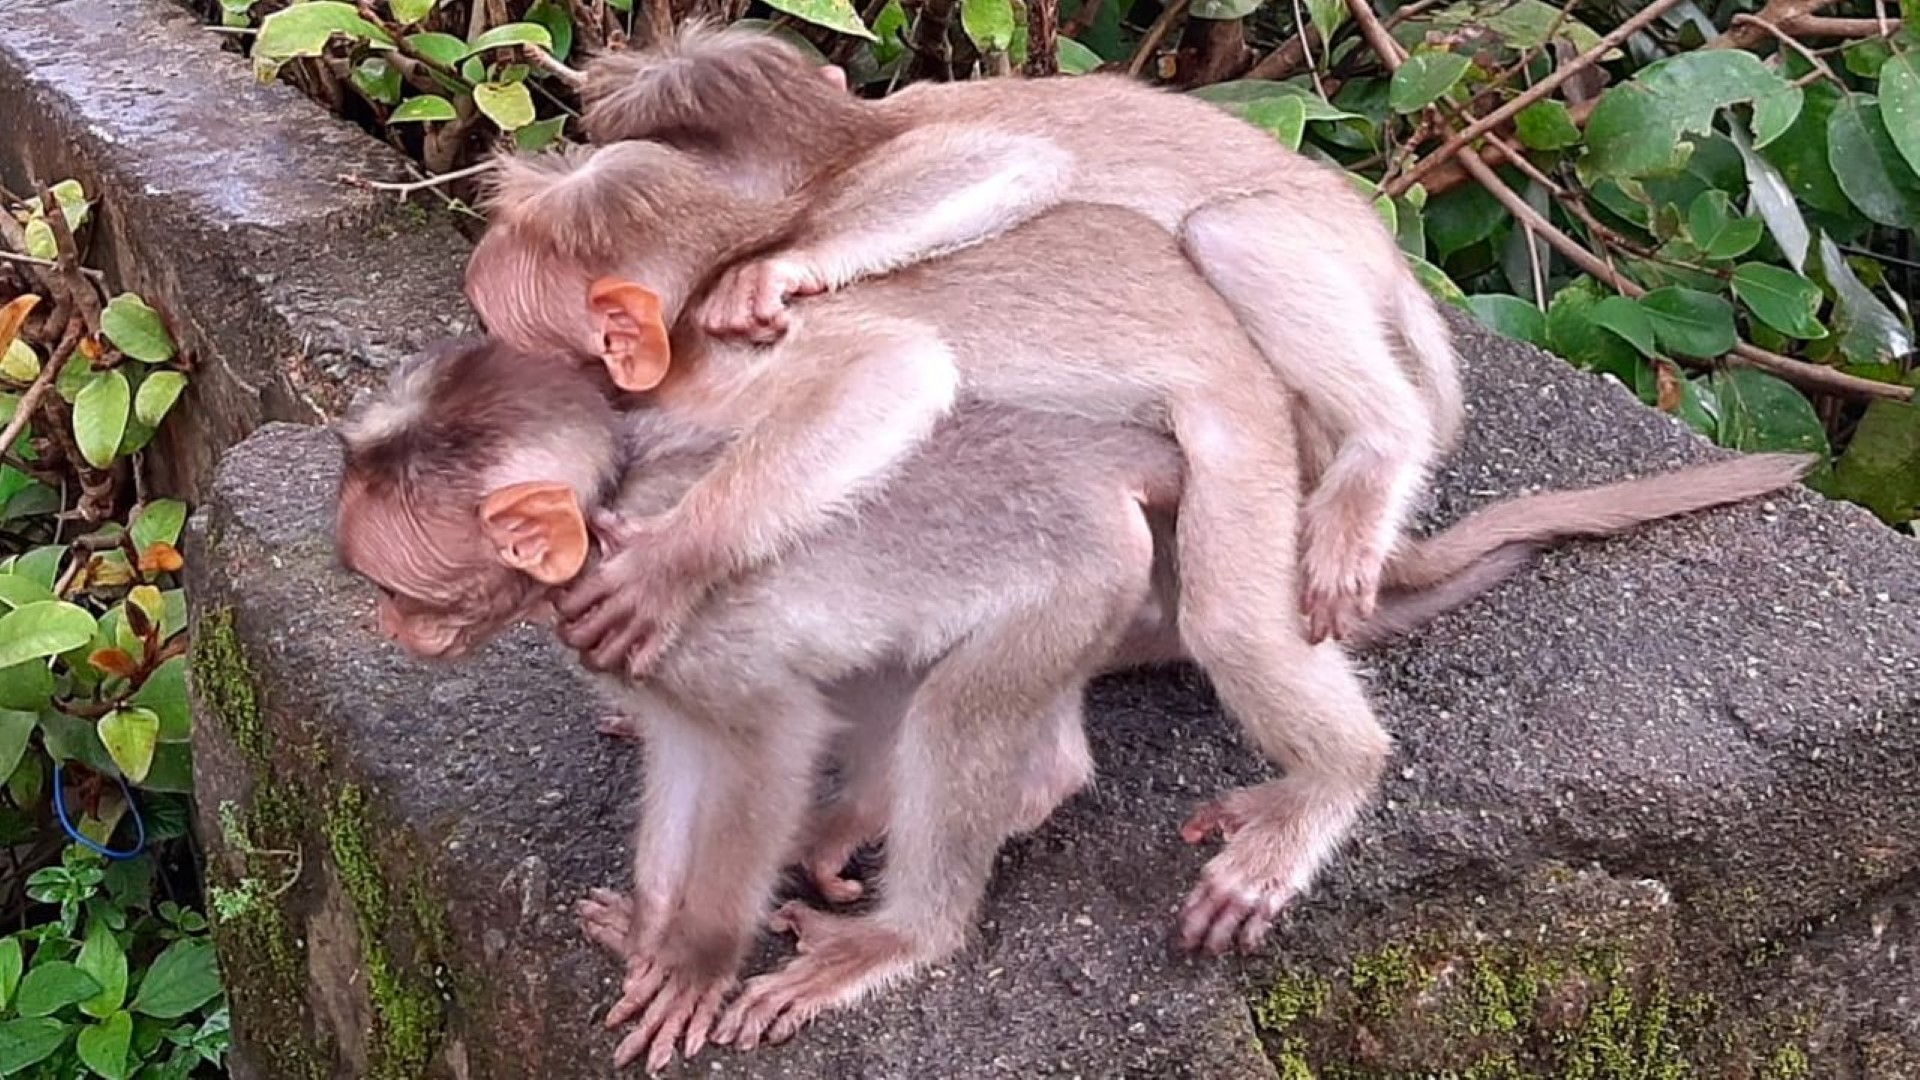 Bonnet macaque infants